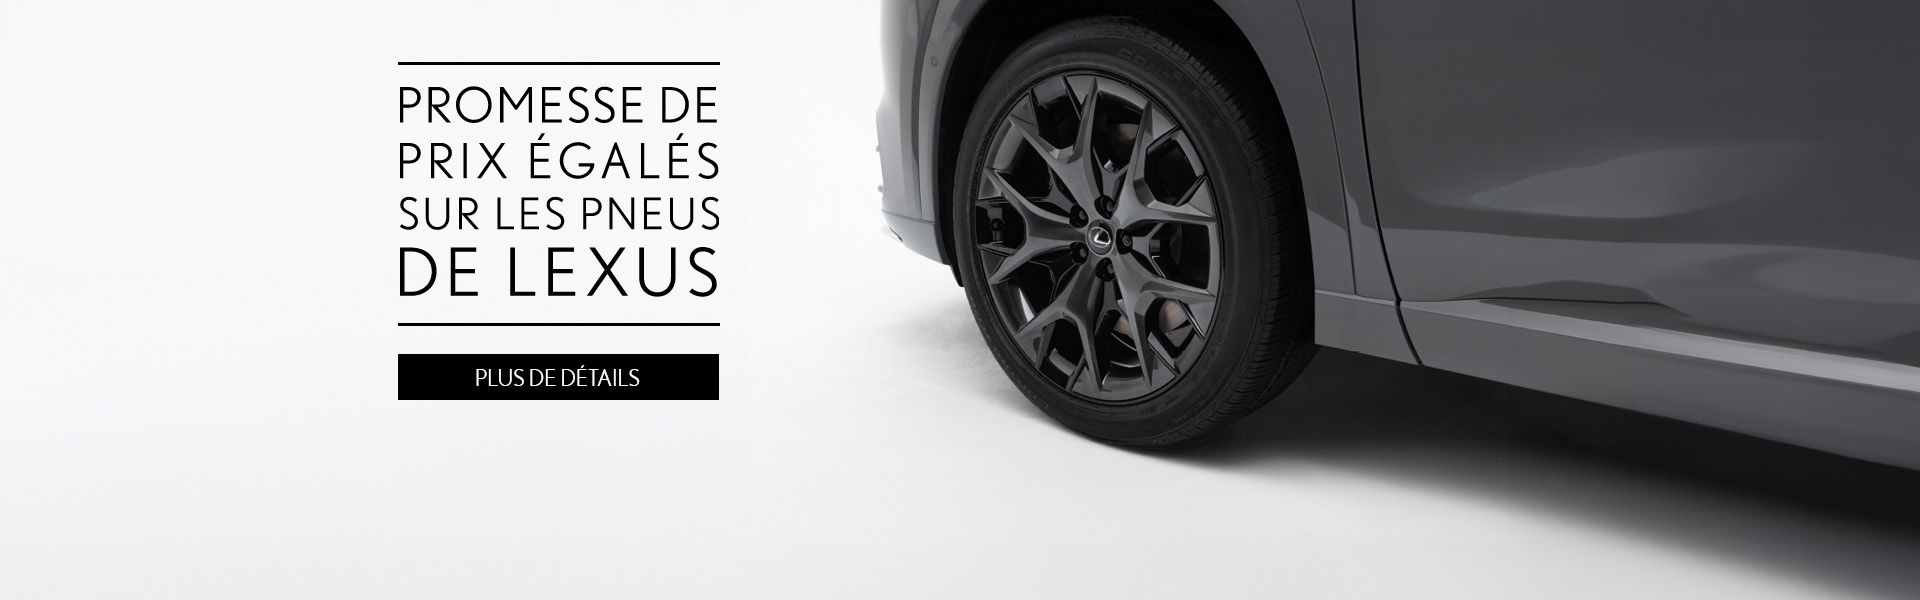 la promesse de prix égalés sur les pneus plus de détails de lexus